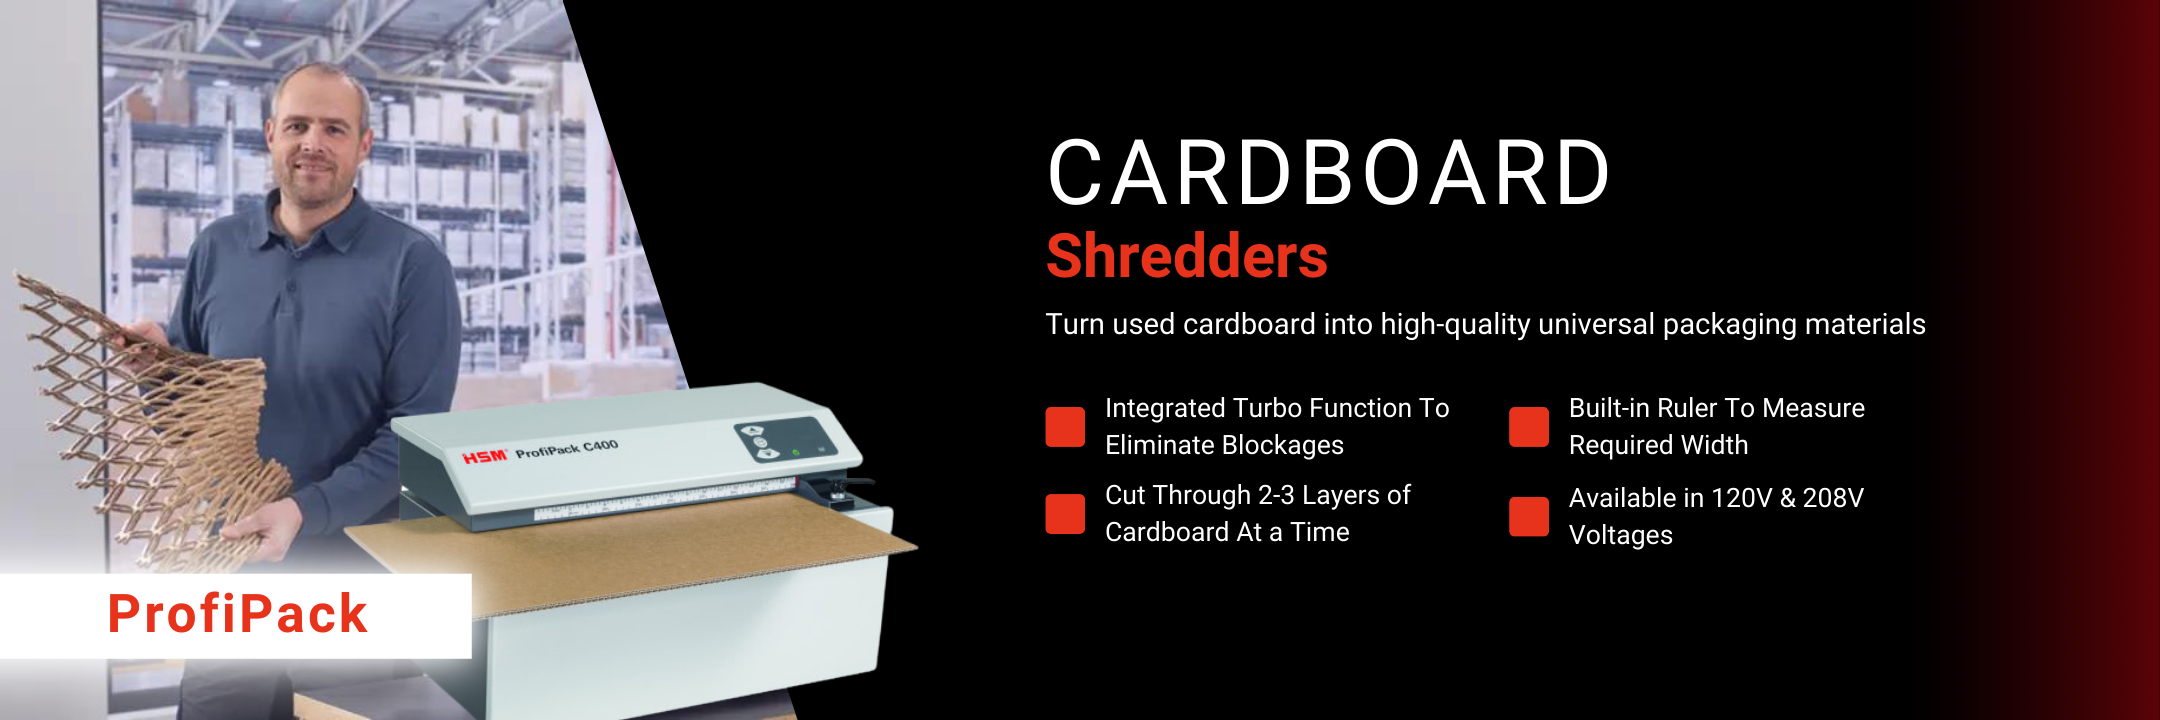 HSM-Cardboard-Shredders-USA